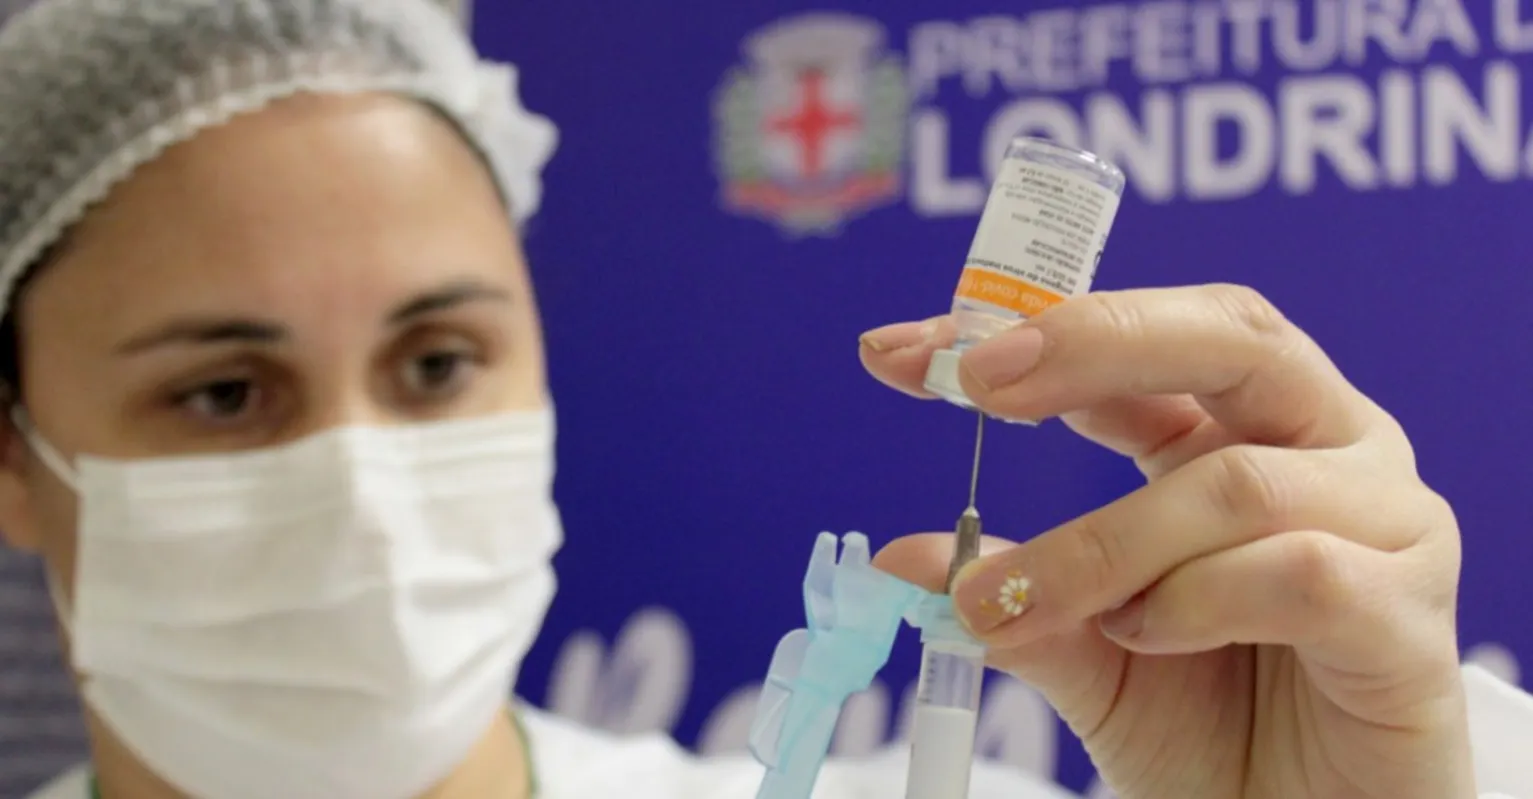 A prefeitura anunciou que 109.199 pessoas receberam a primeira dose e 57,273 receberam a segunda dose da vacina contra a Covid-19.